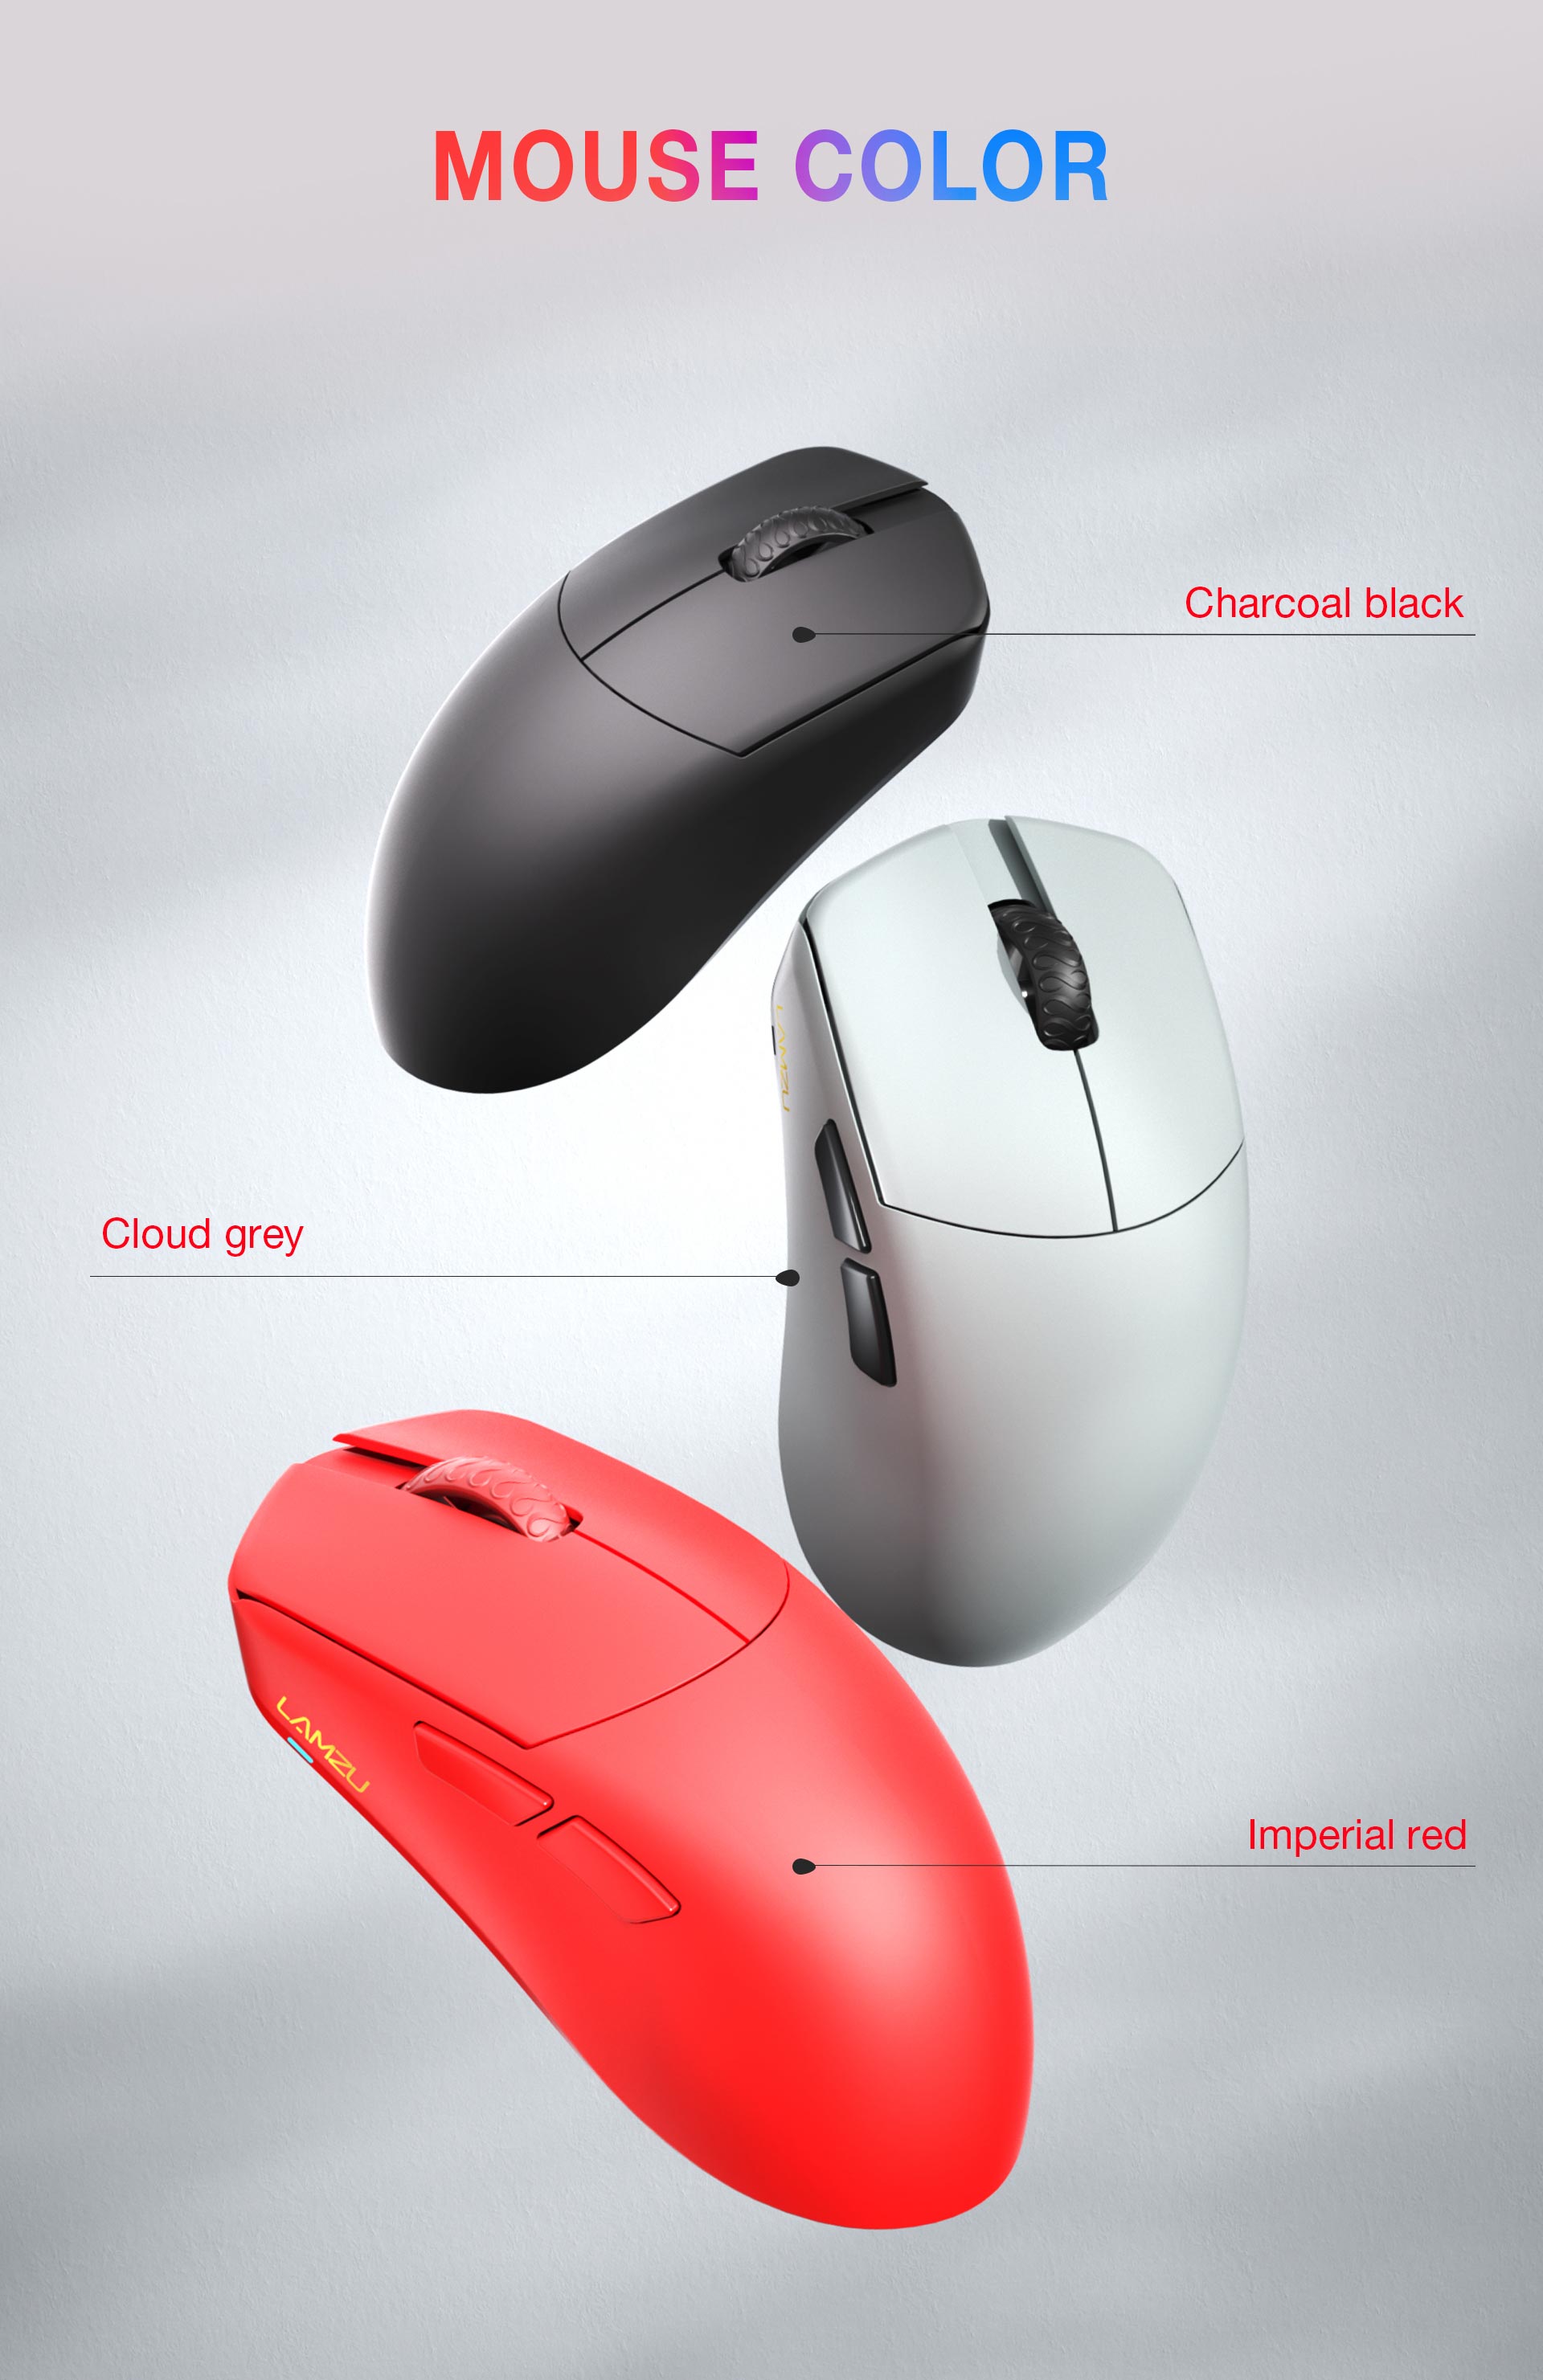 LAMZU MAYA Wireless Gaming Mouse (4K Compatible)